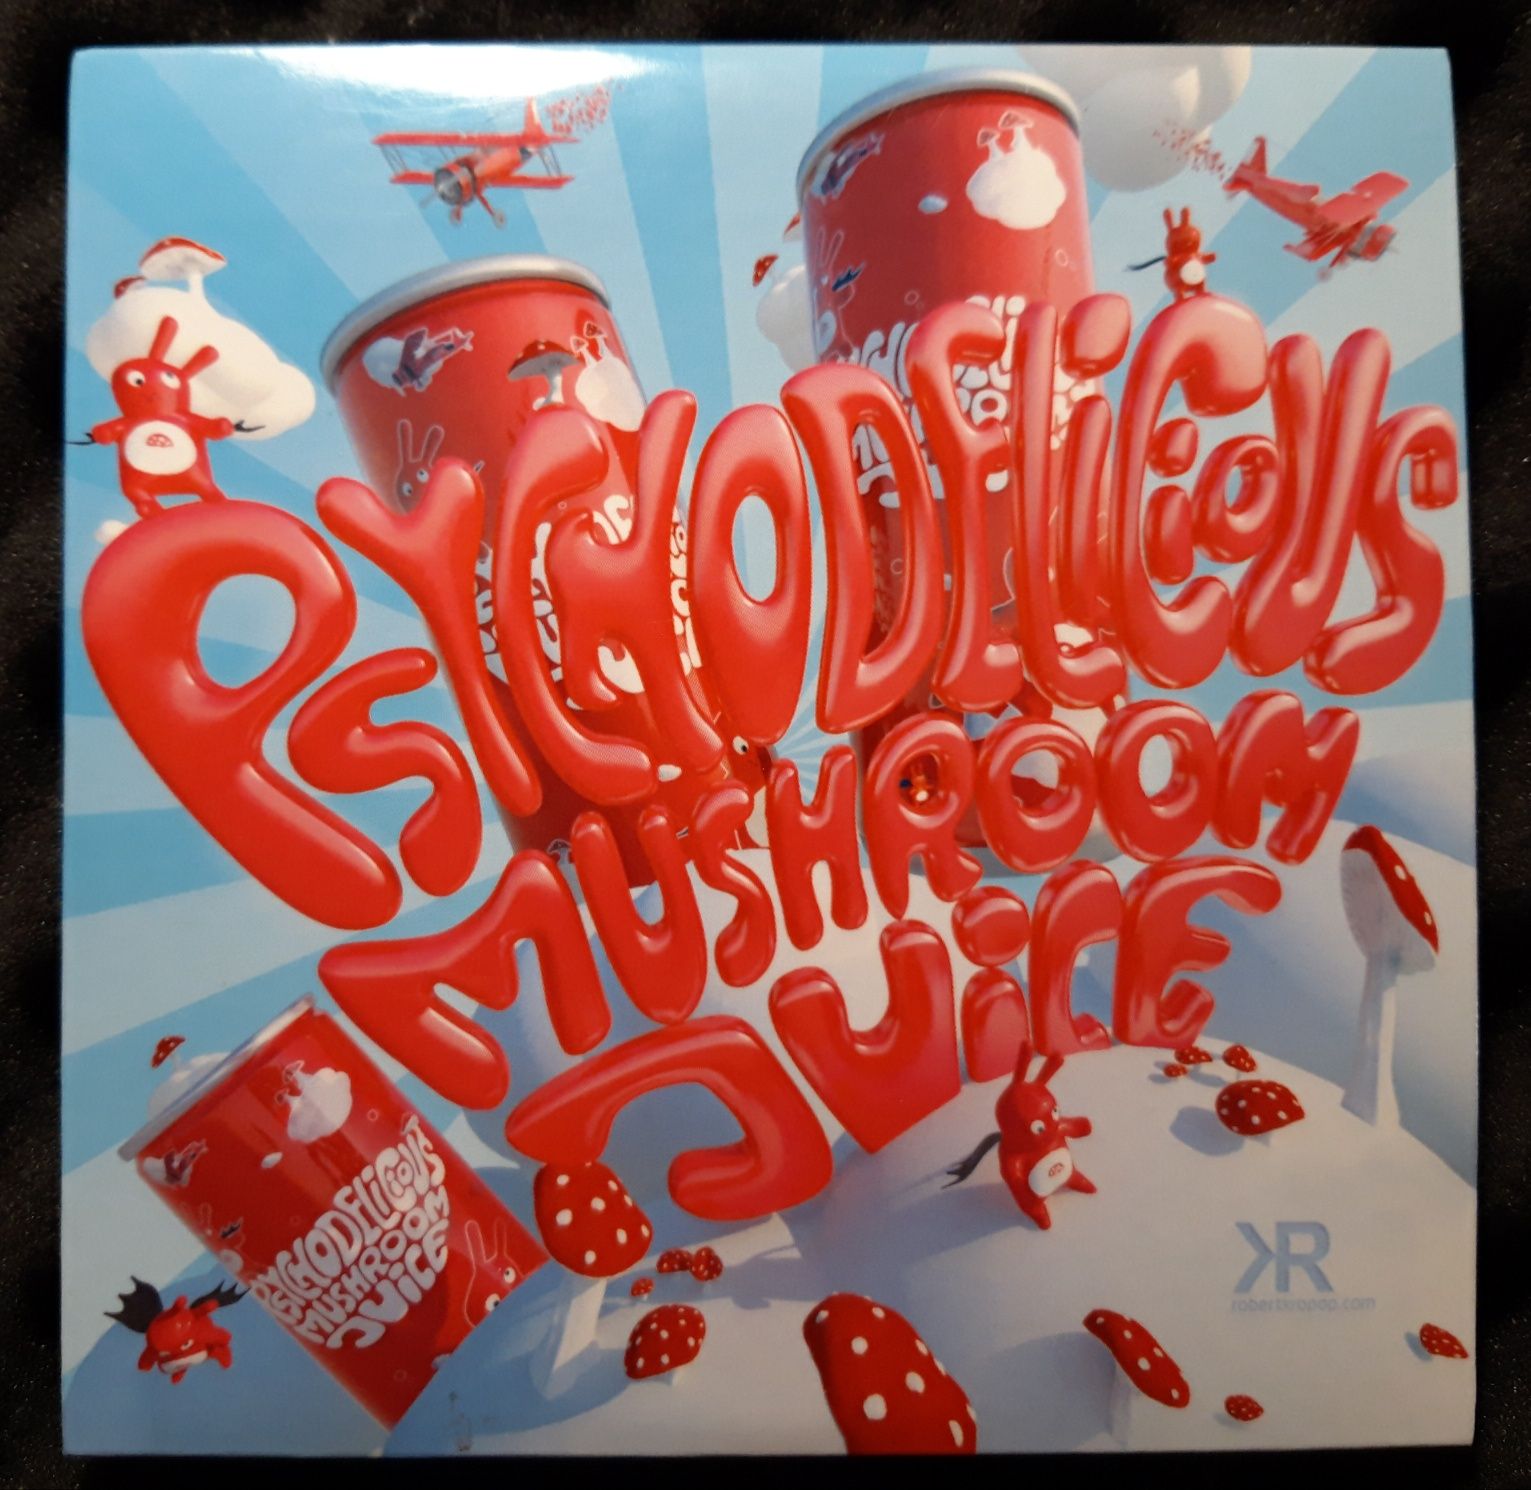 Robert Kropop - Psychodelicious Mushroom Juice (CD, 2019)